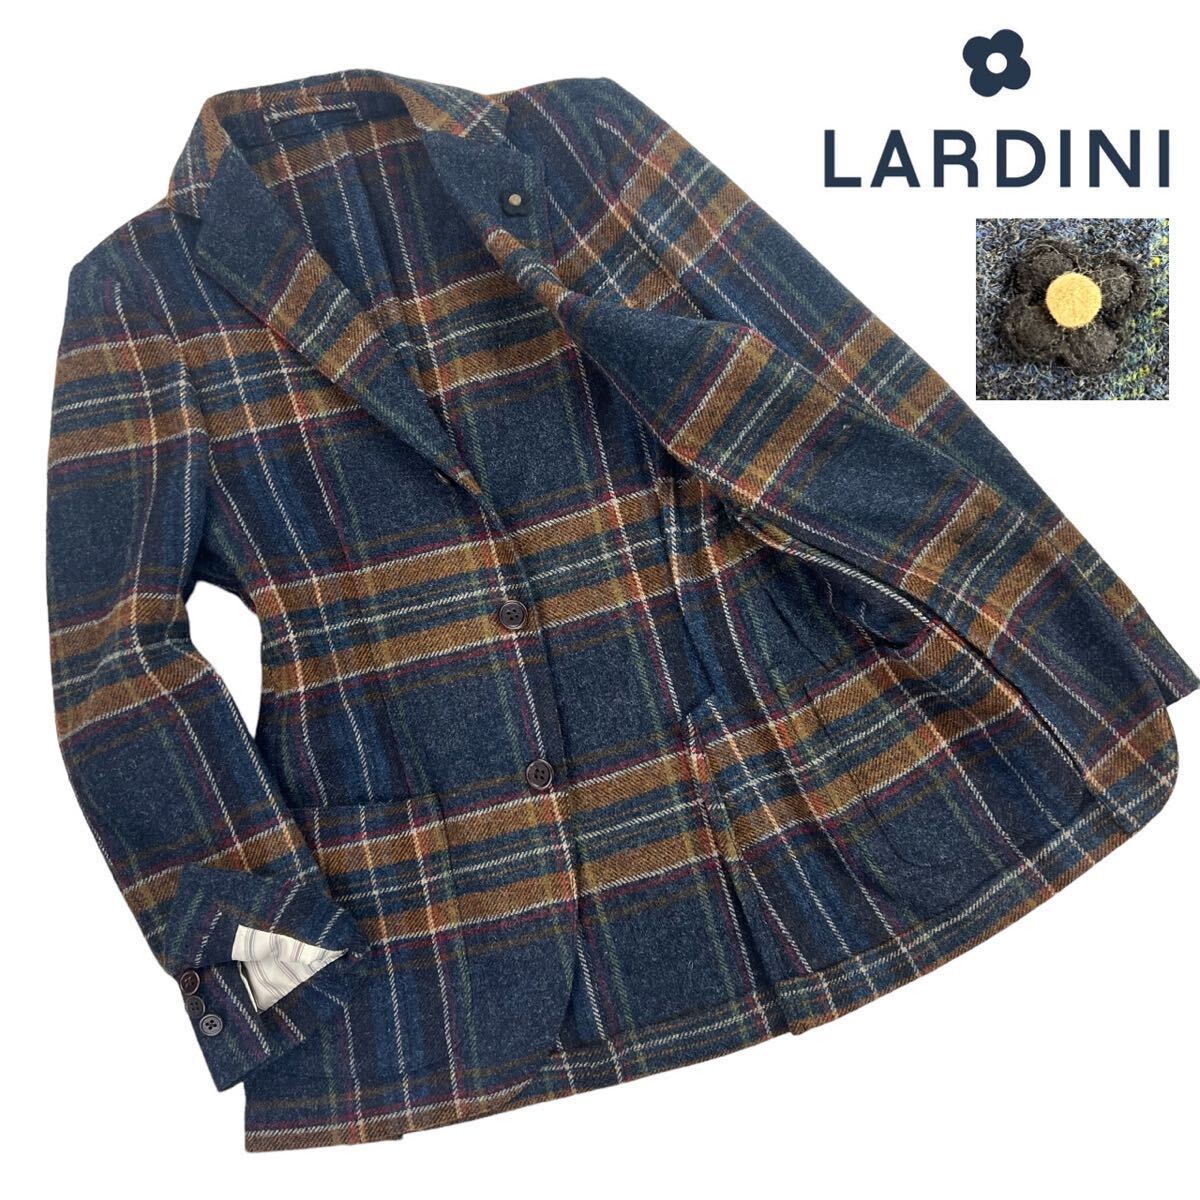 定価約13万 極美品 LARDINI ラルディーニ 3B段返 ツイード生地 テーラードジャケット サイズ42/XS-S相当 ネイビー ブラウン 秋冬 A2445_画像1